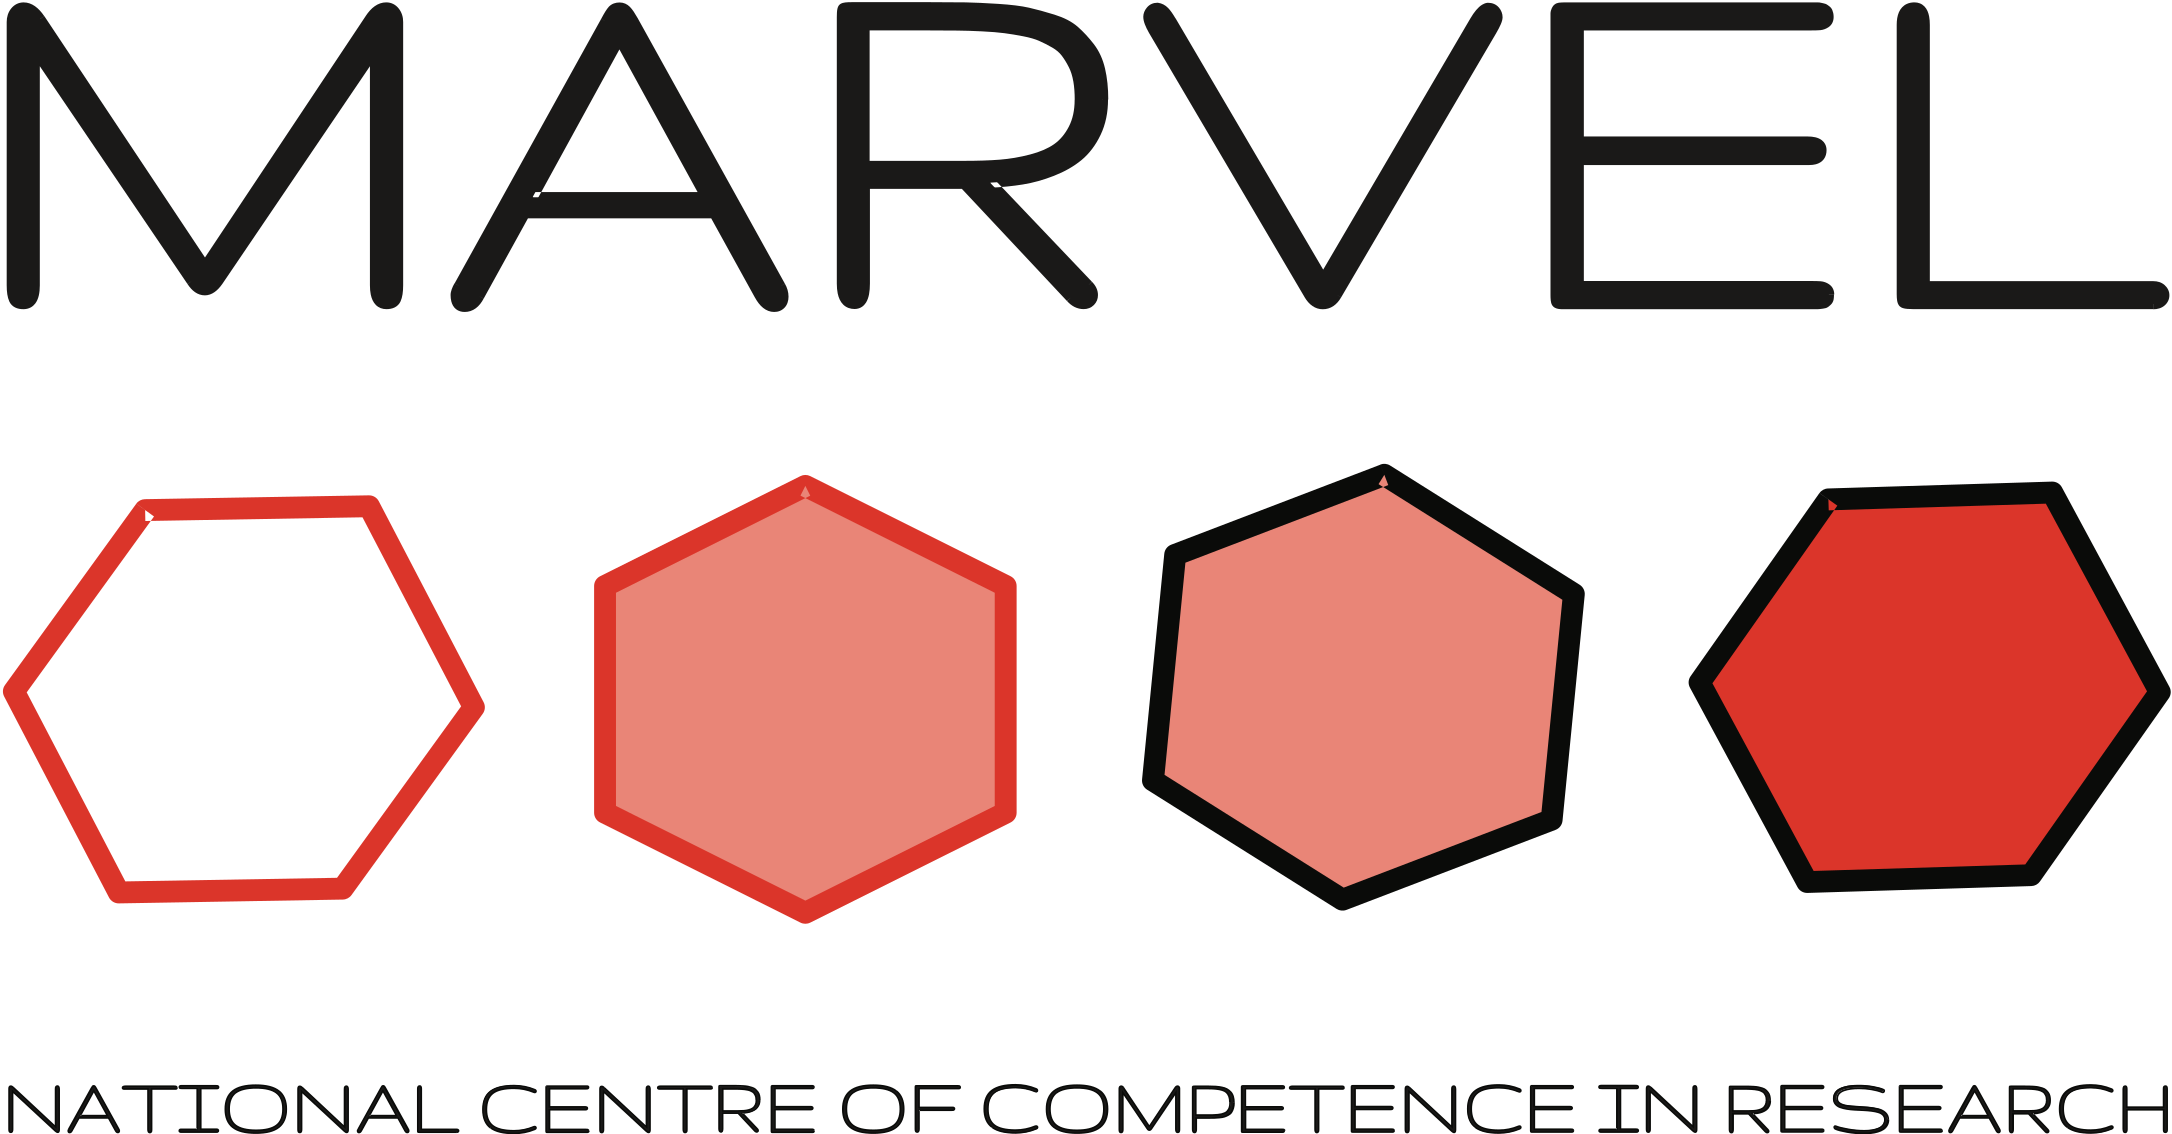 _images/MARVEL-logo.png